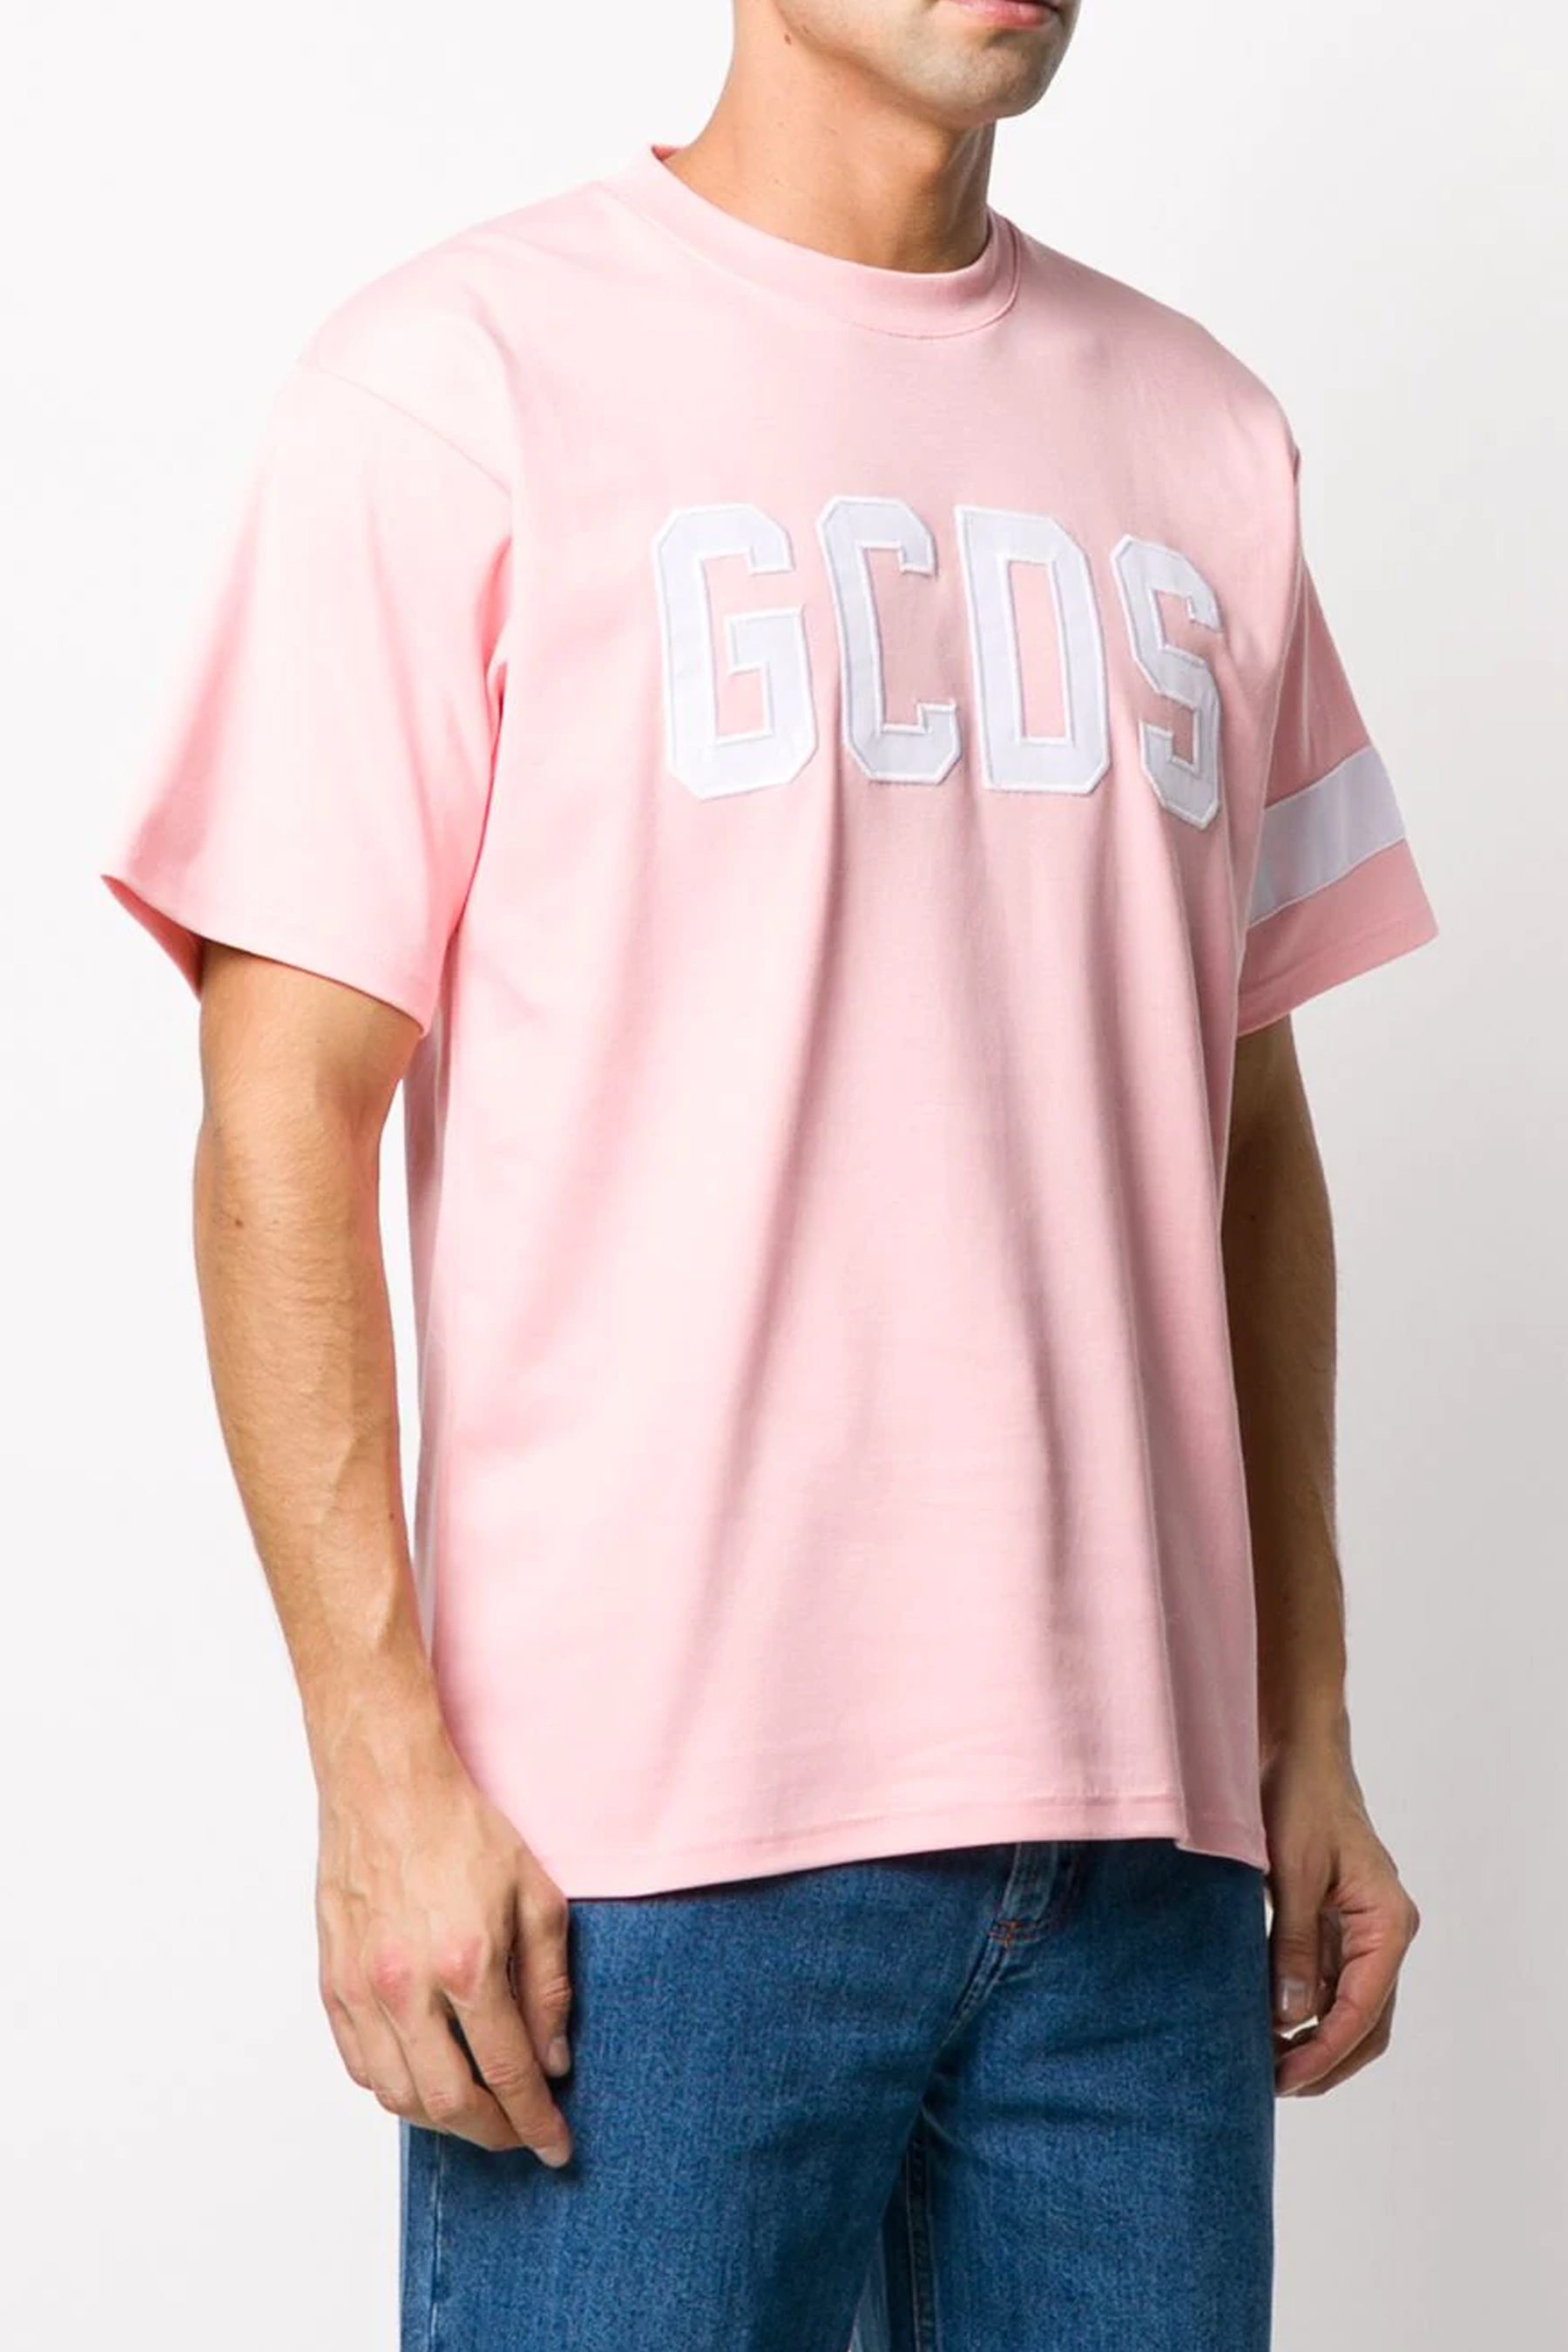 Gcds embroidered logo round neck T-shirt